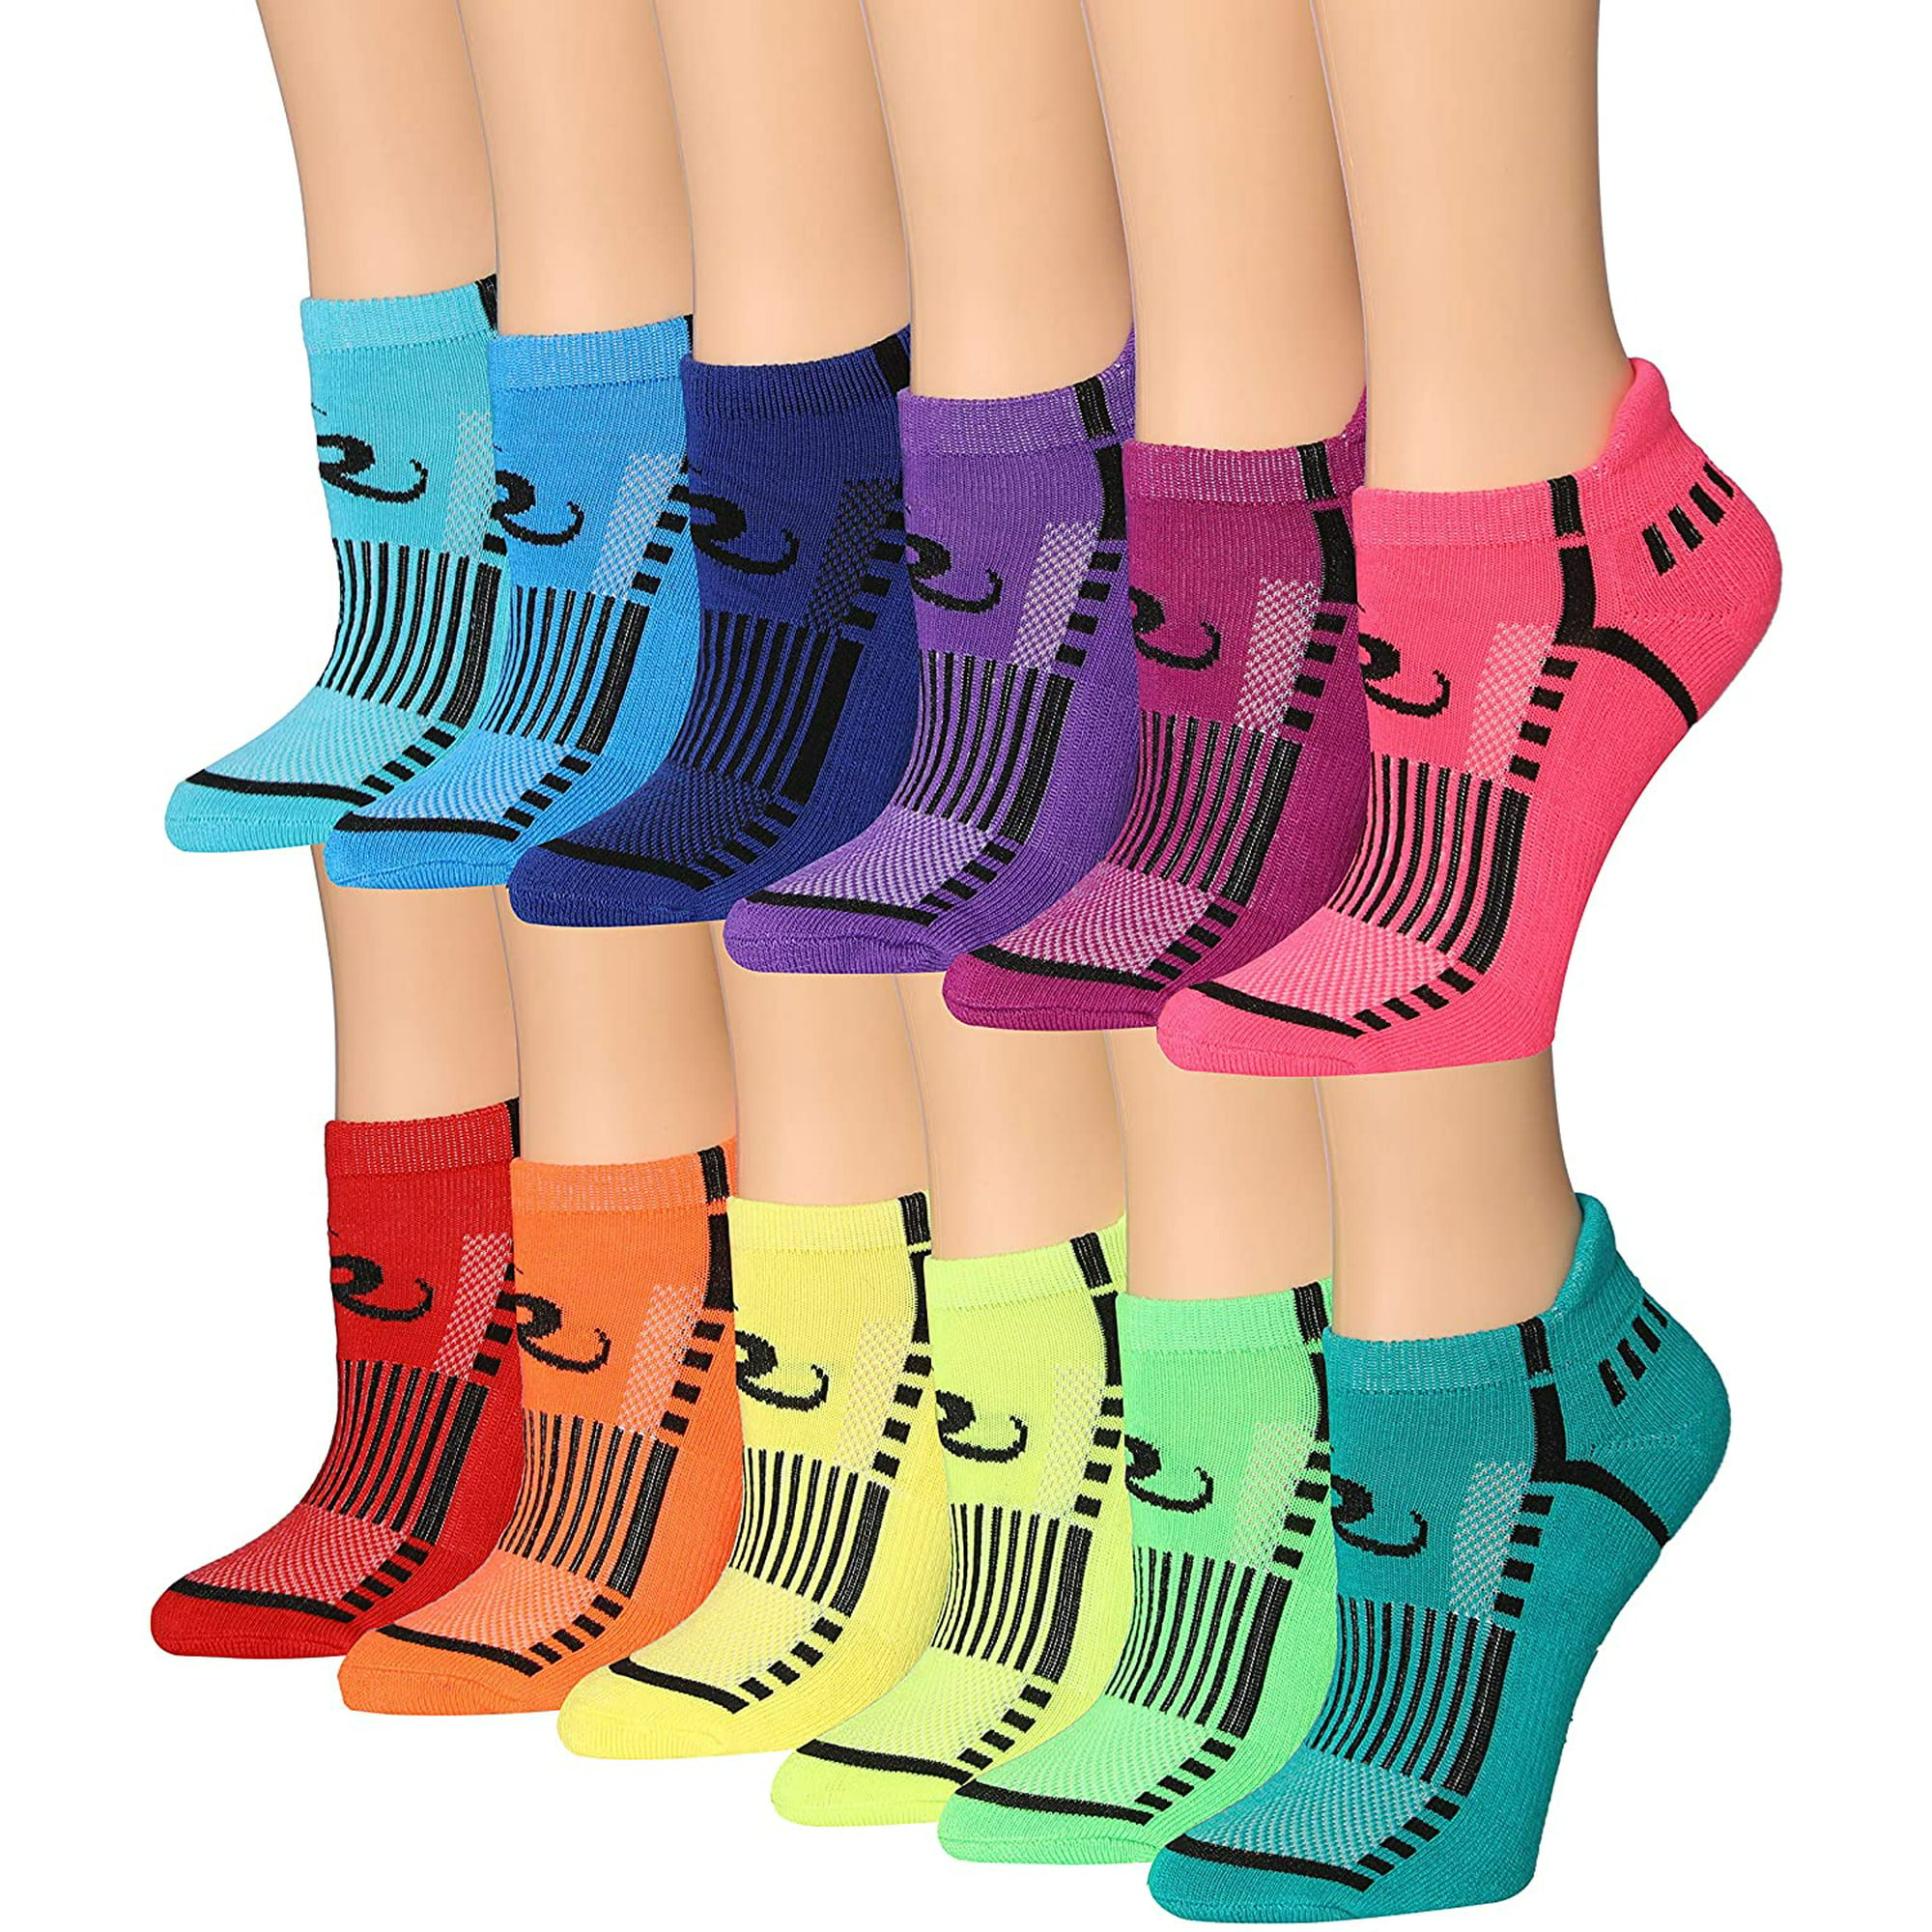 Ronnox Womens 12-Pairs Low Cut Running & Athletic Performance Tab Socks 